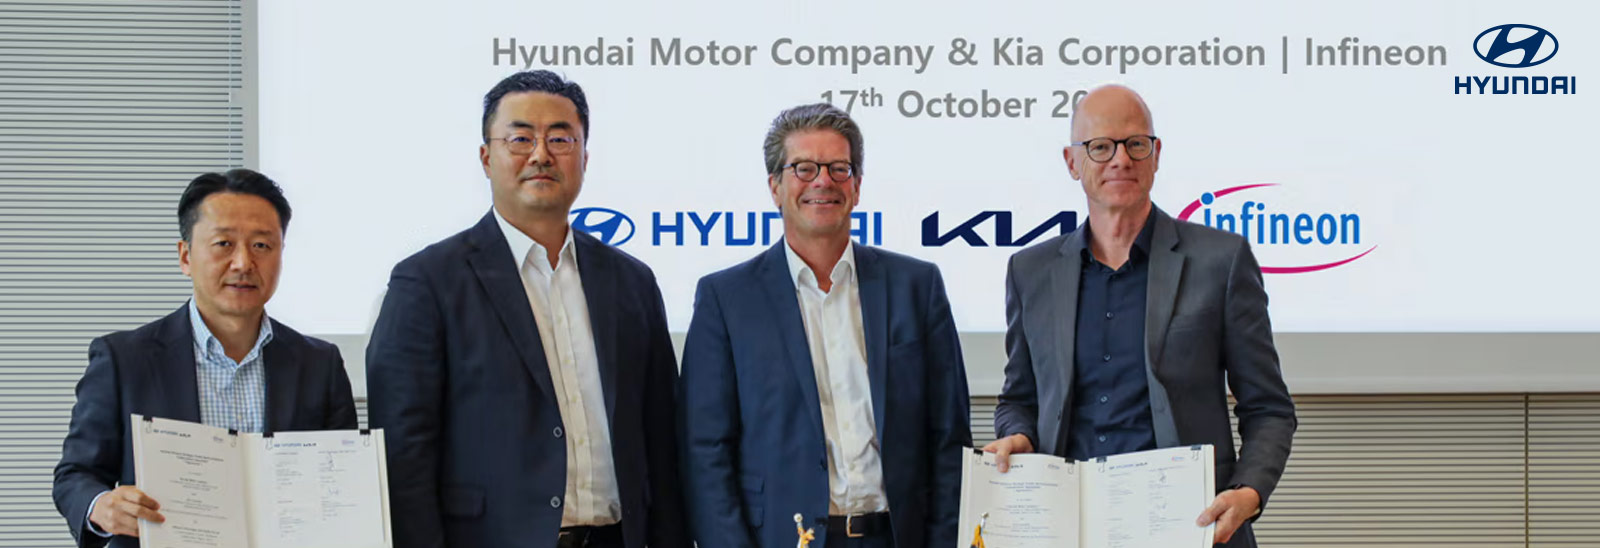 Hyundai y Kia se asocian con Infineon para suministro de semiconductores